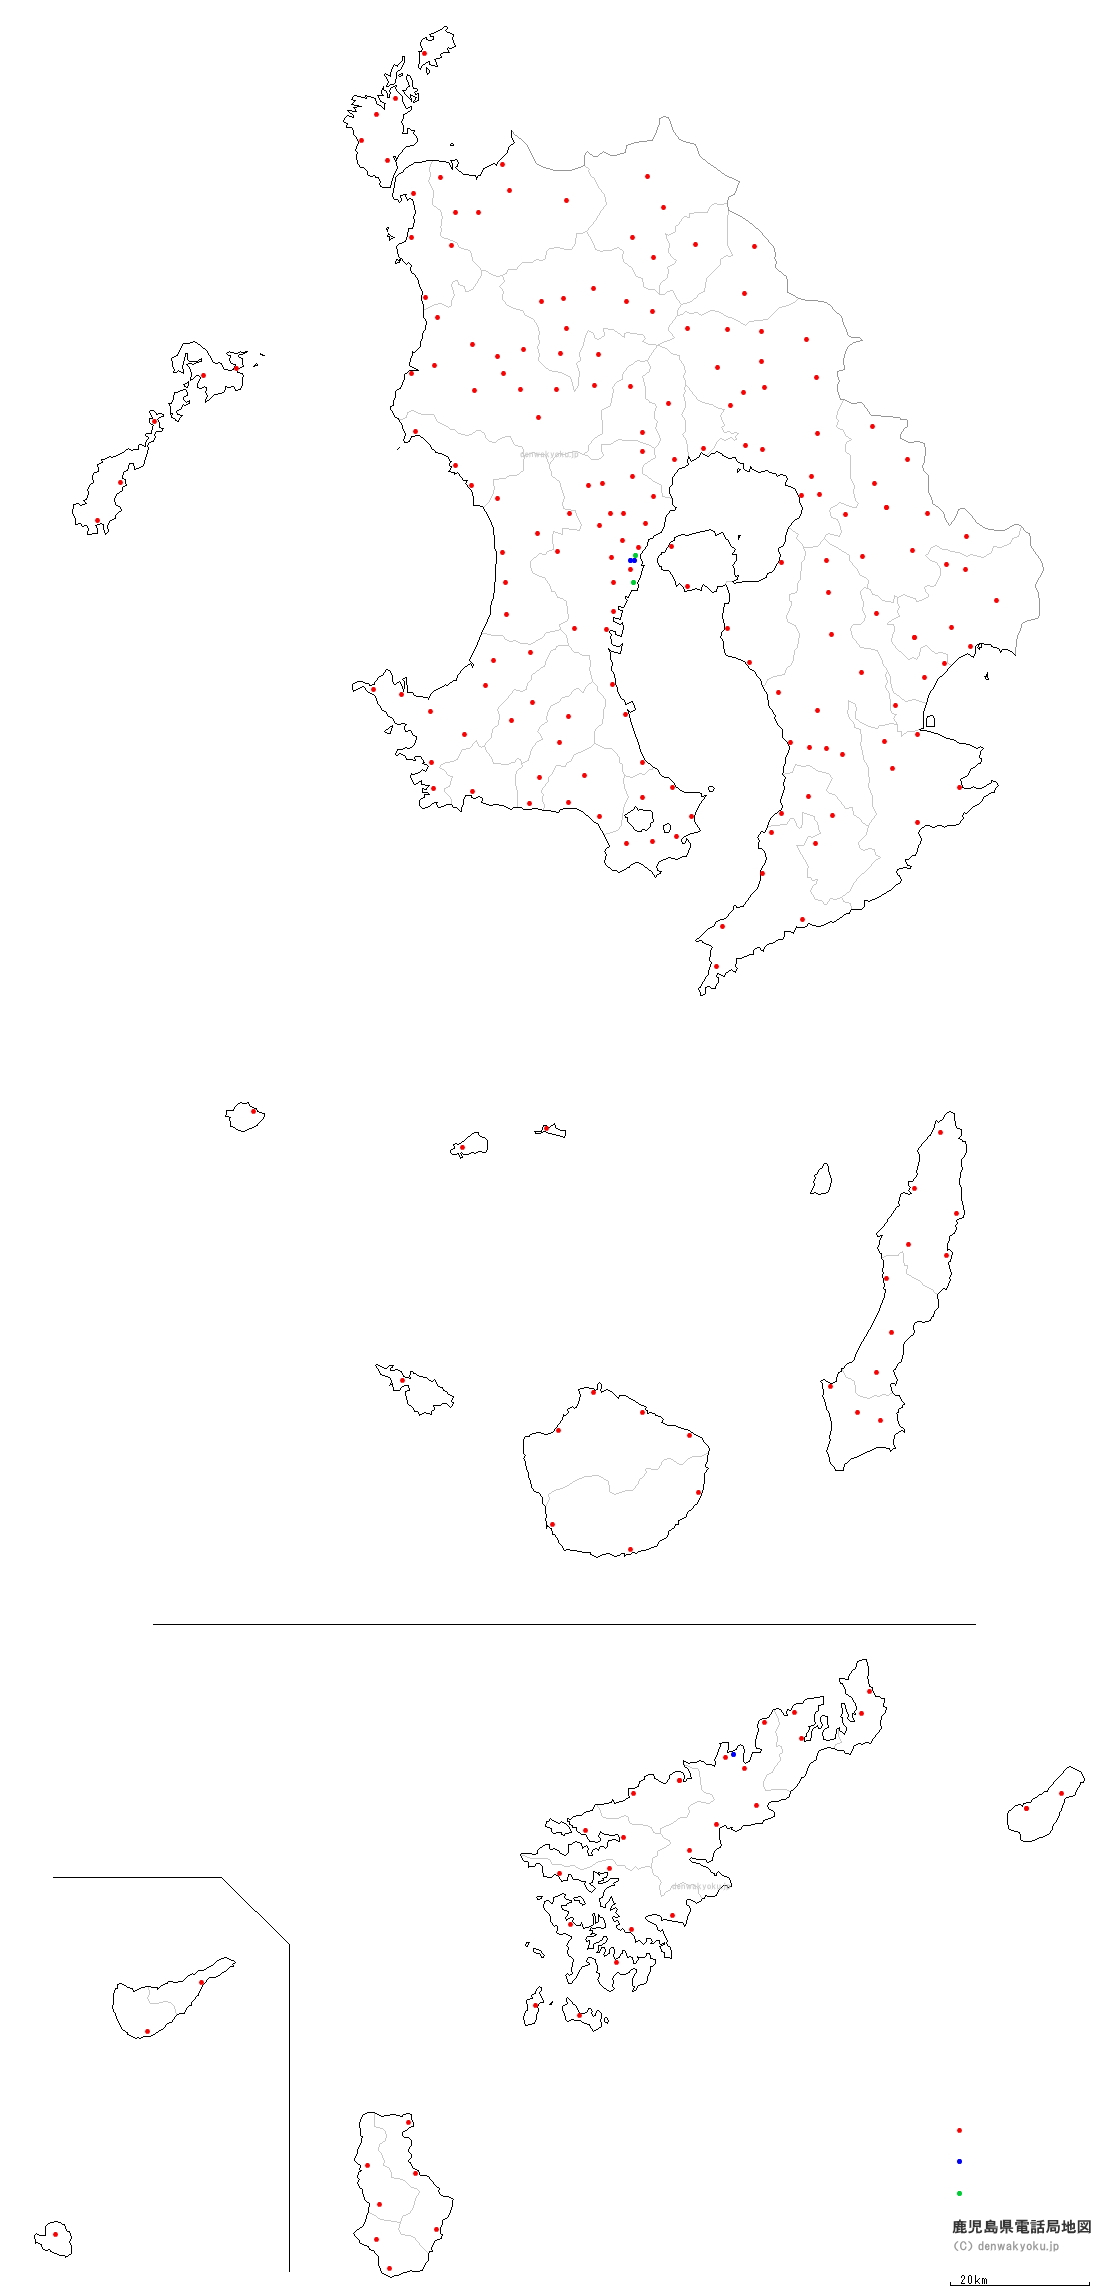 鹿児島県電話局地図（NTT収容局マップ）